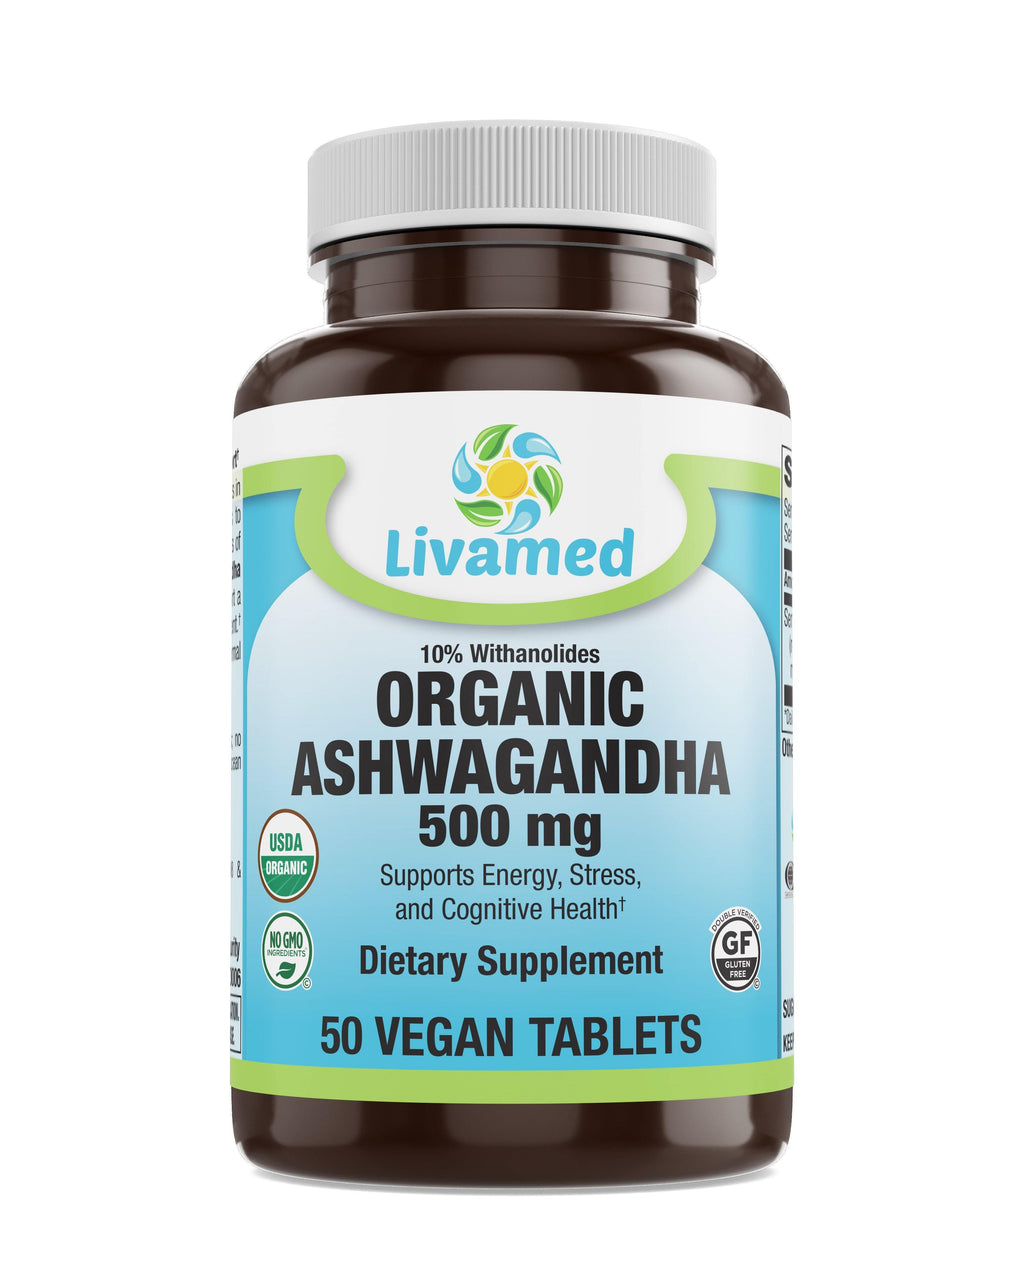 Livamed - Organic Ashwagandha 500 mg Tab   50 Count - Livamed Vitamins